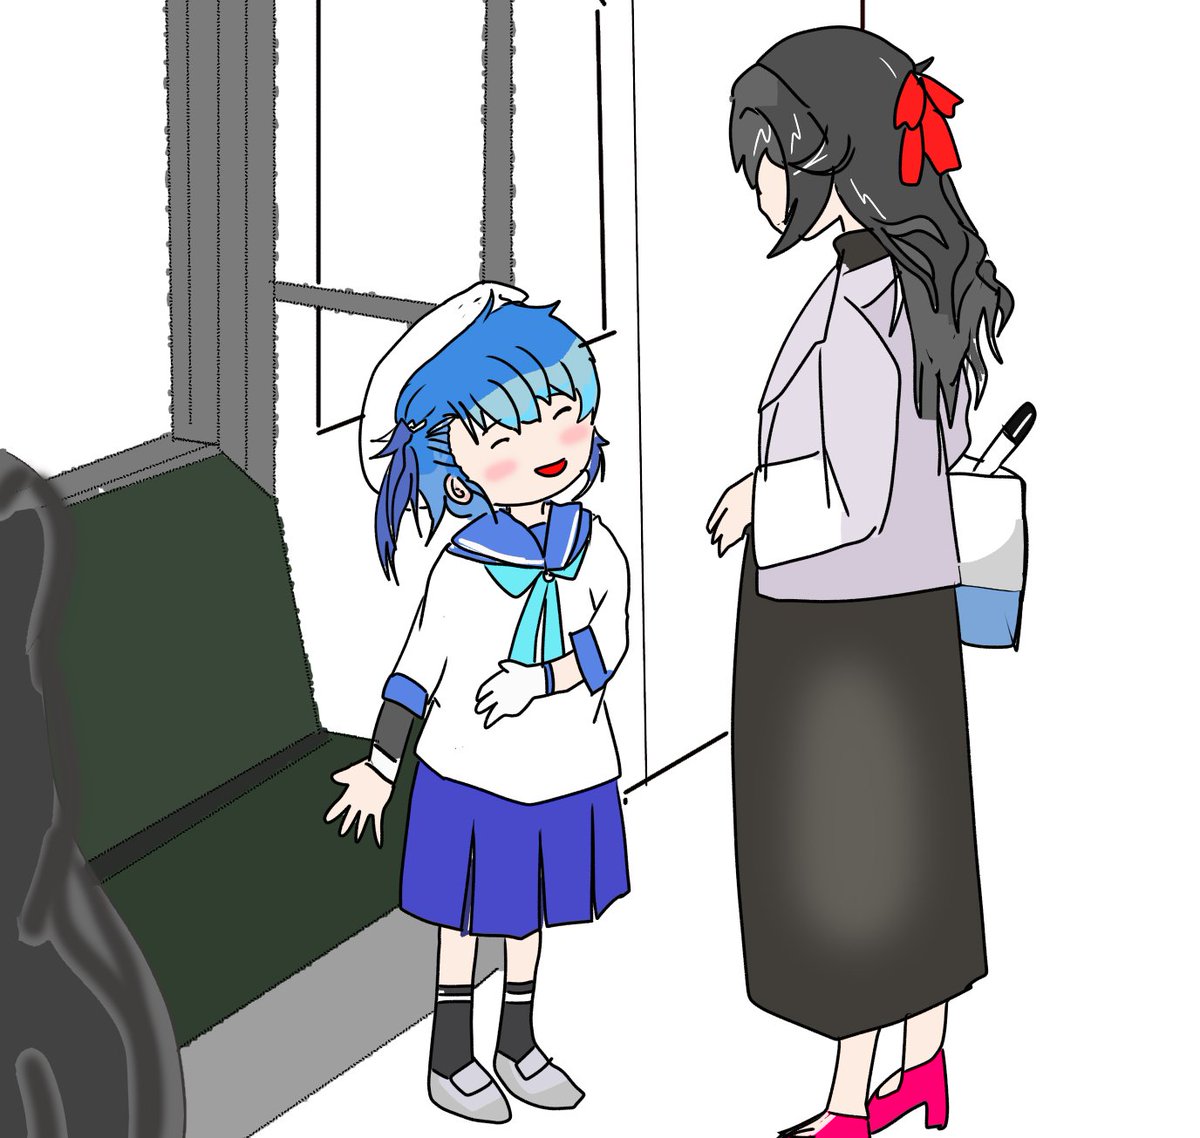 sado (kancolle) 2girls multiple girls blue hair skirt long hair hat blue neckerchief  illustration images